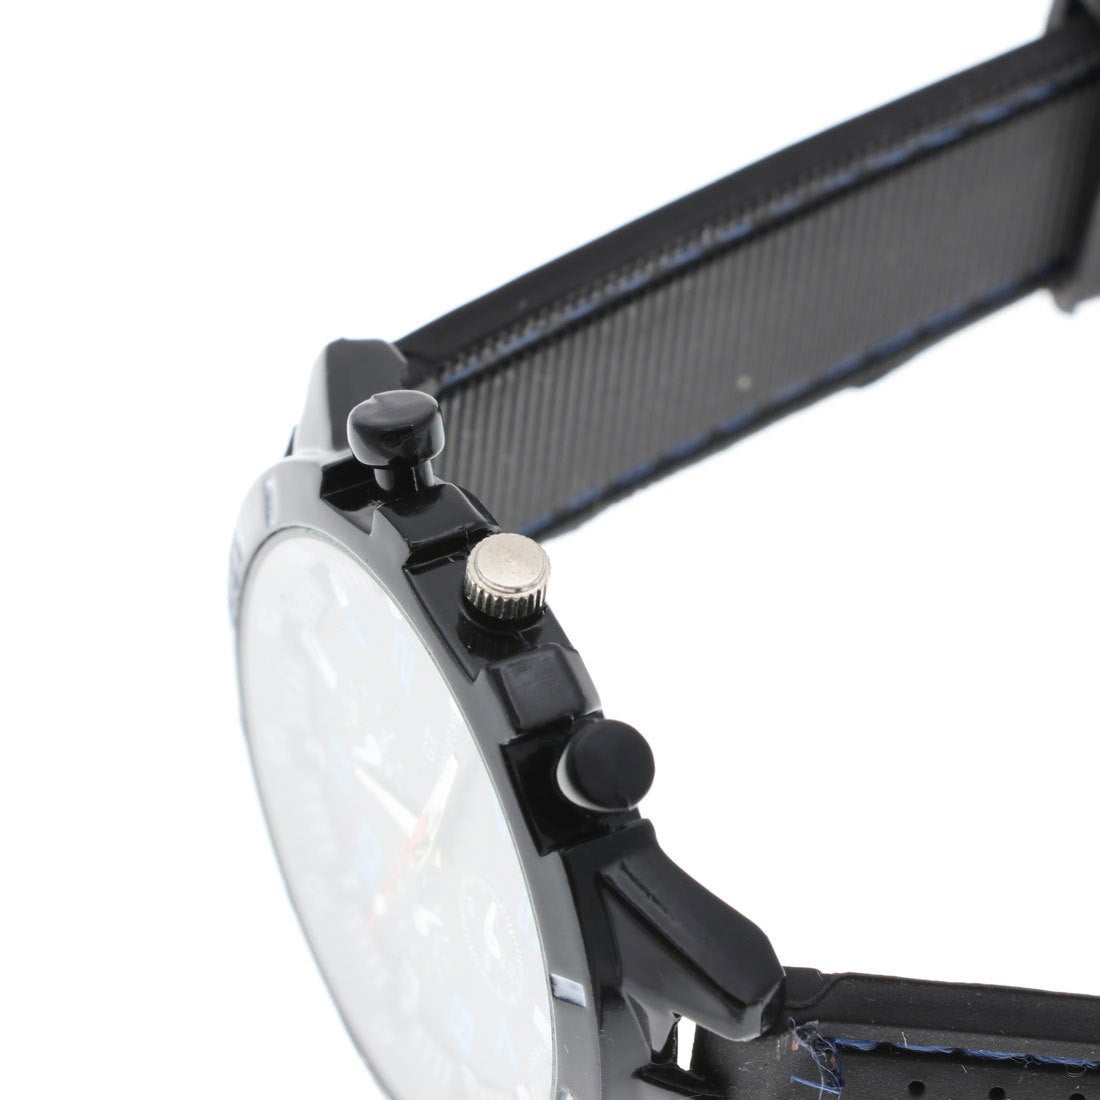 スマイルプロジェクト Smile Project アクセントカラーが目を引く ラバーベルトミリタリー調の腕時計 Av028 Blu Blu 靴 ファッション通販 ロコンド 自宅で試着 気軽に返品